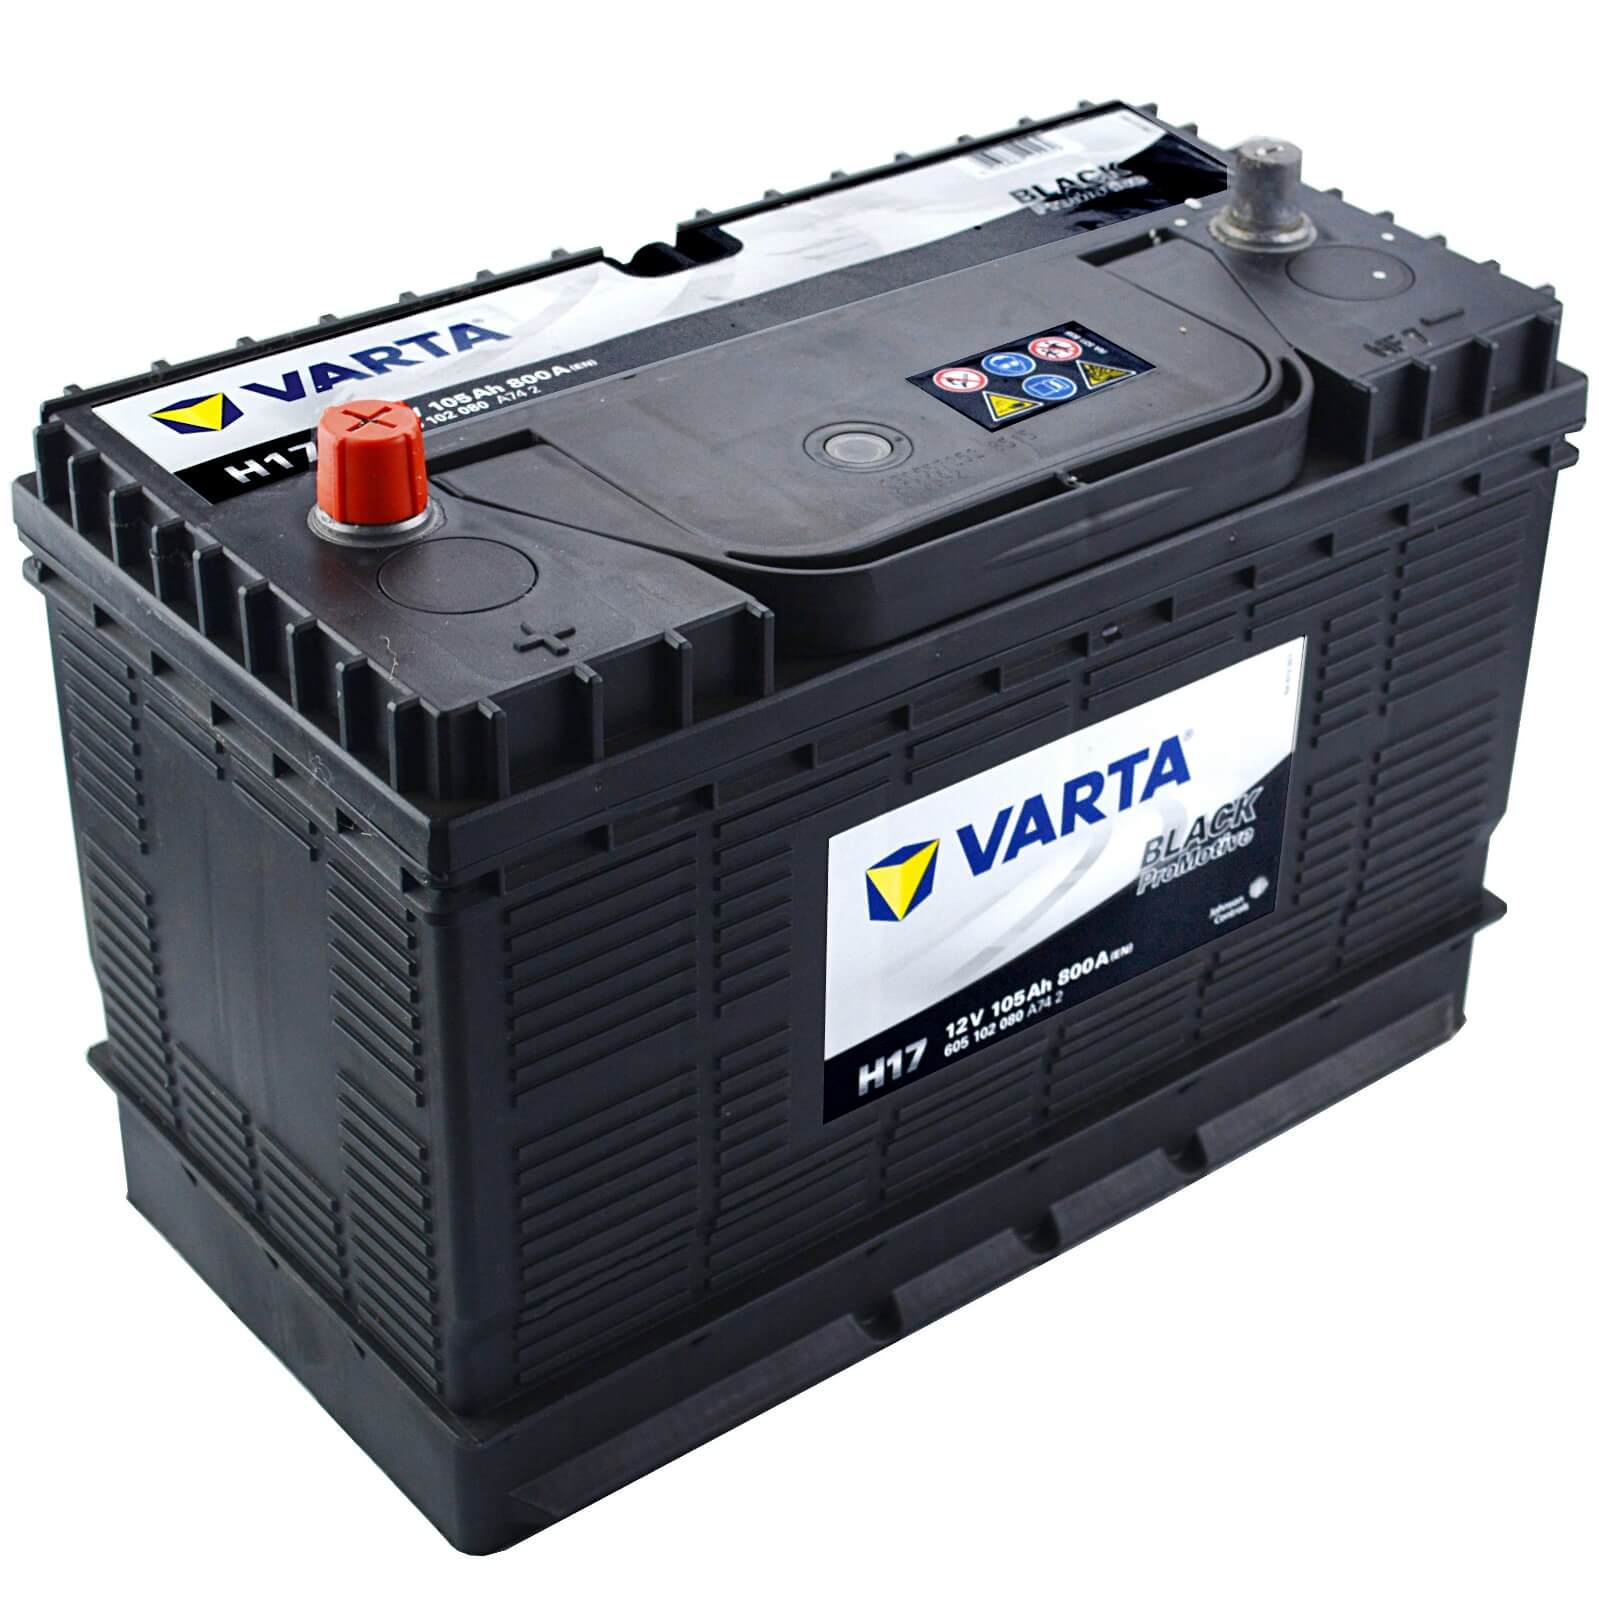 Batterie VARTA Promotive Black N2 12V - 200Ah - P+ en haut à gauche